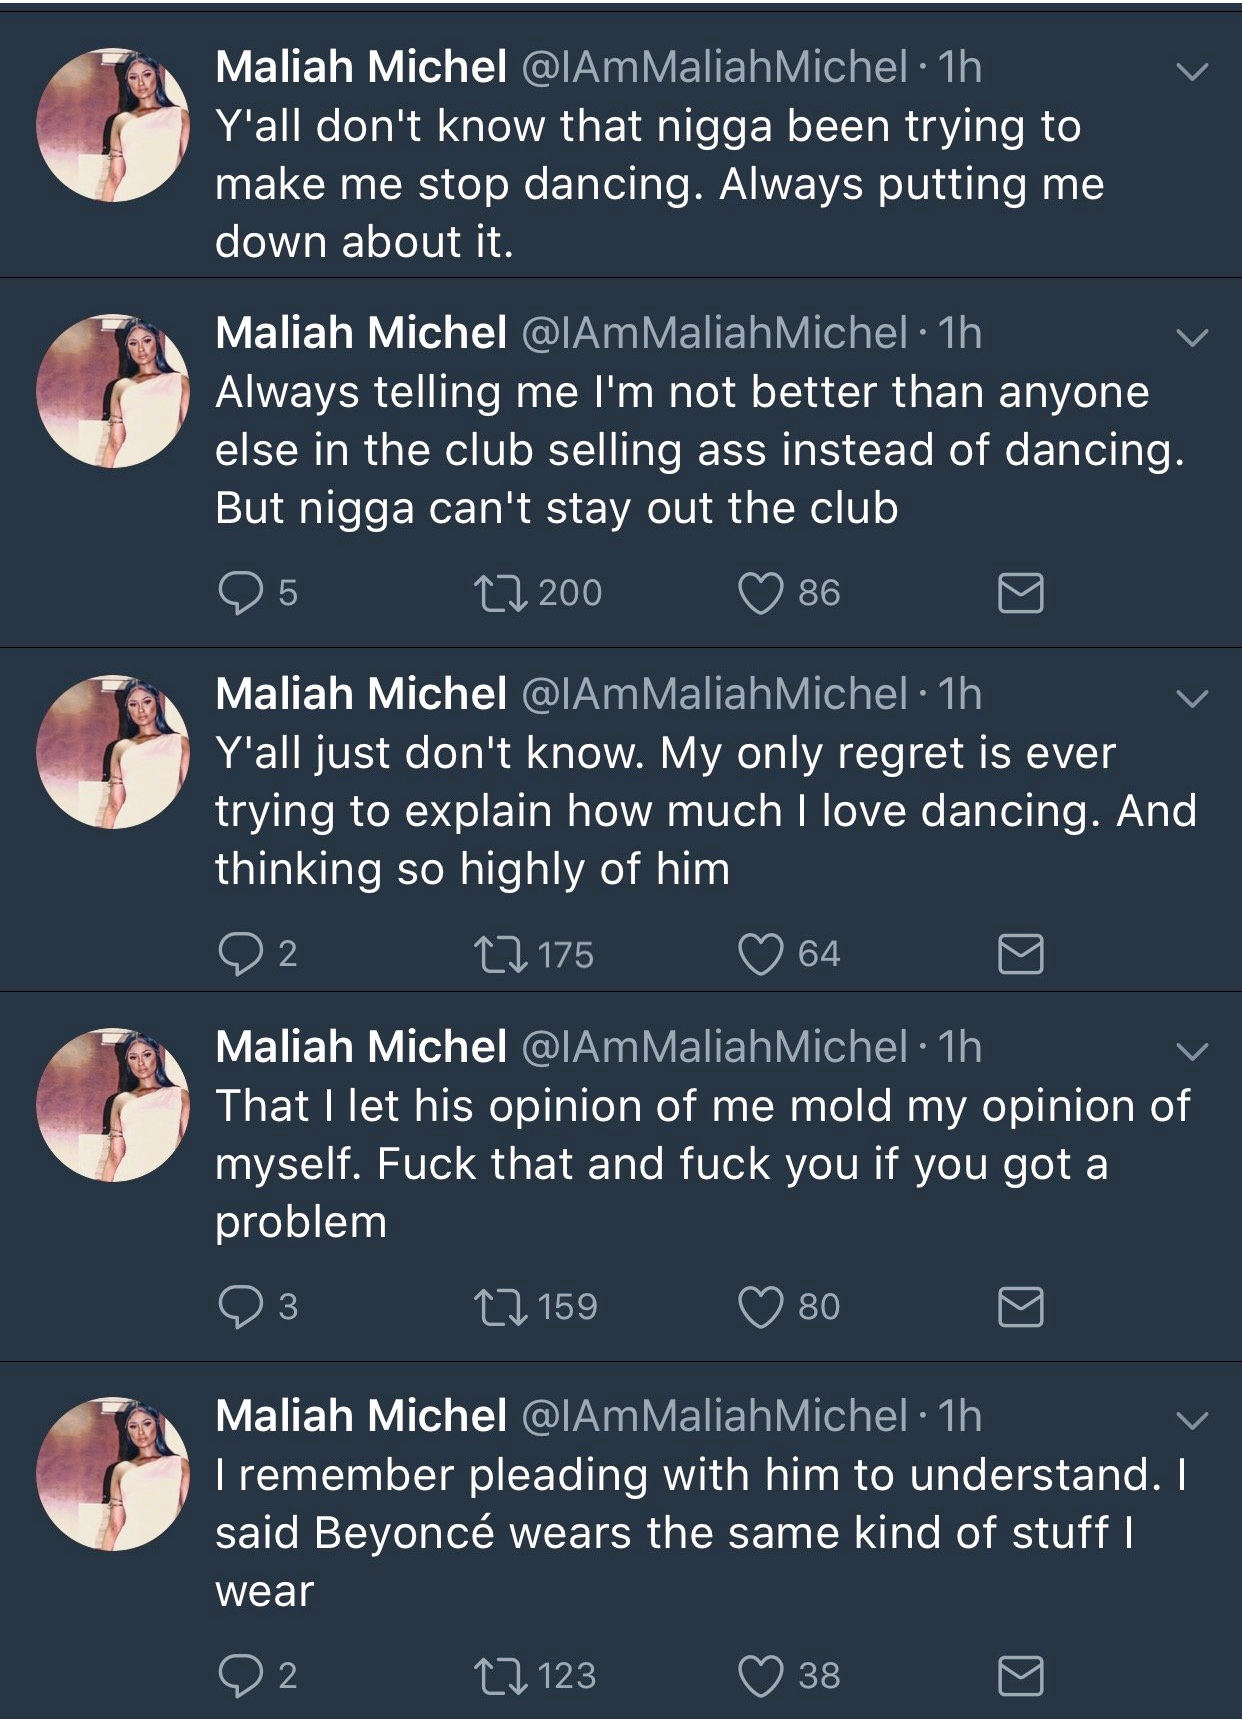 Twitter maliah michel Maliah Michel